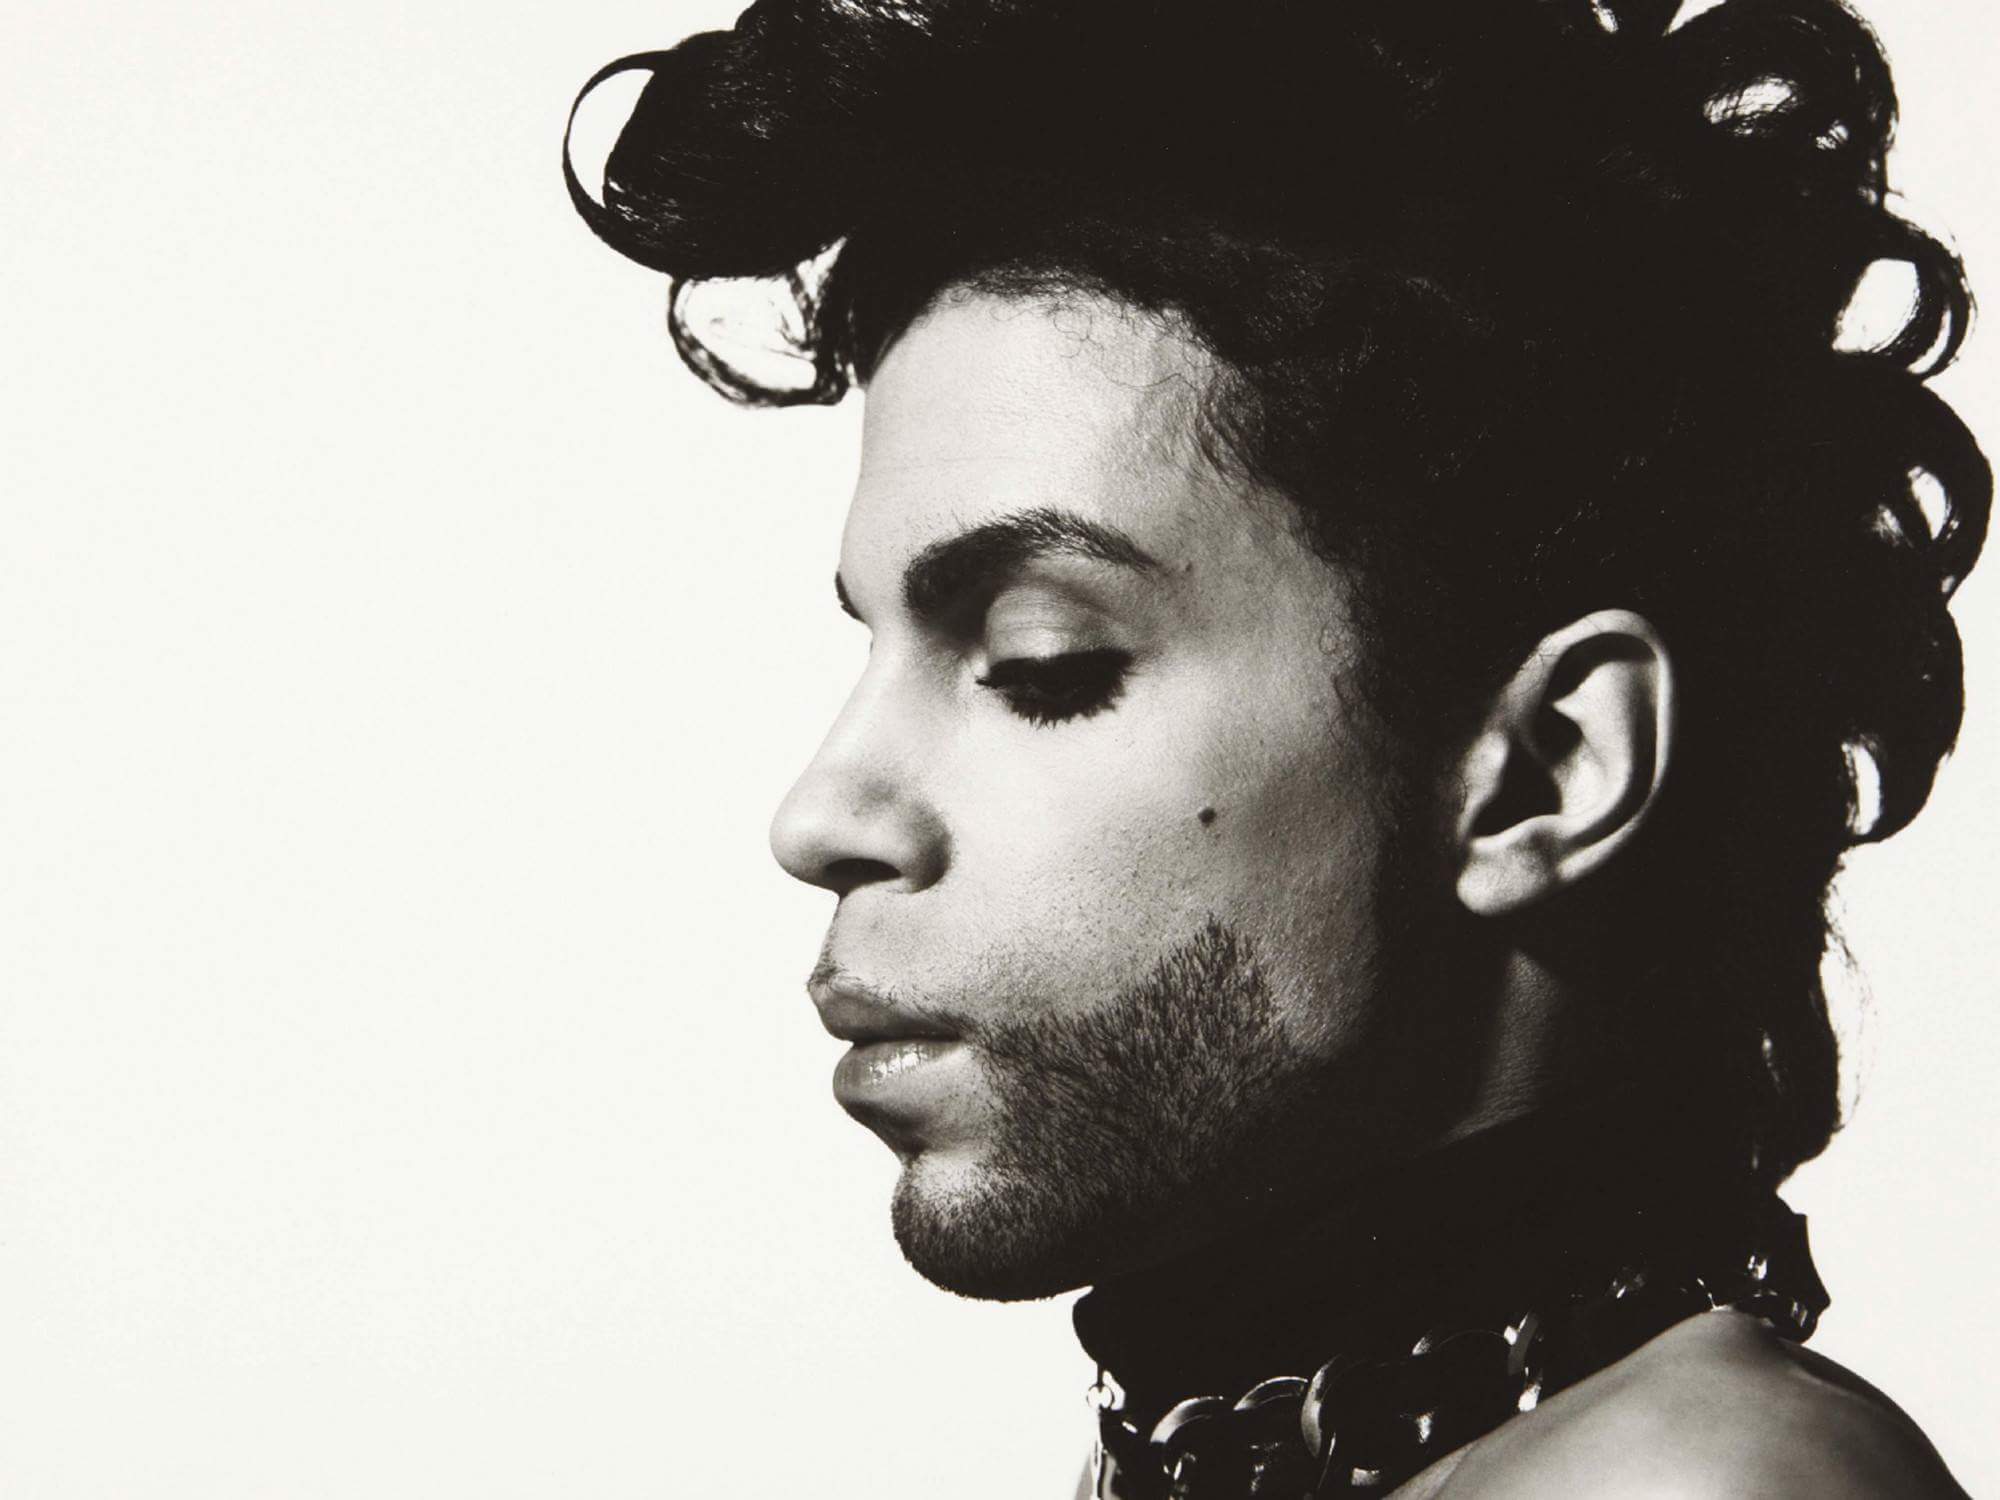 Prince, 1958 – 2016